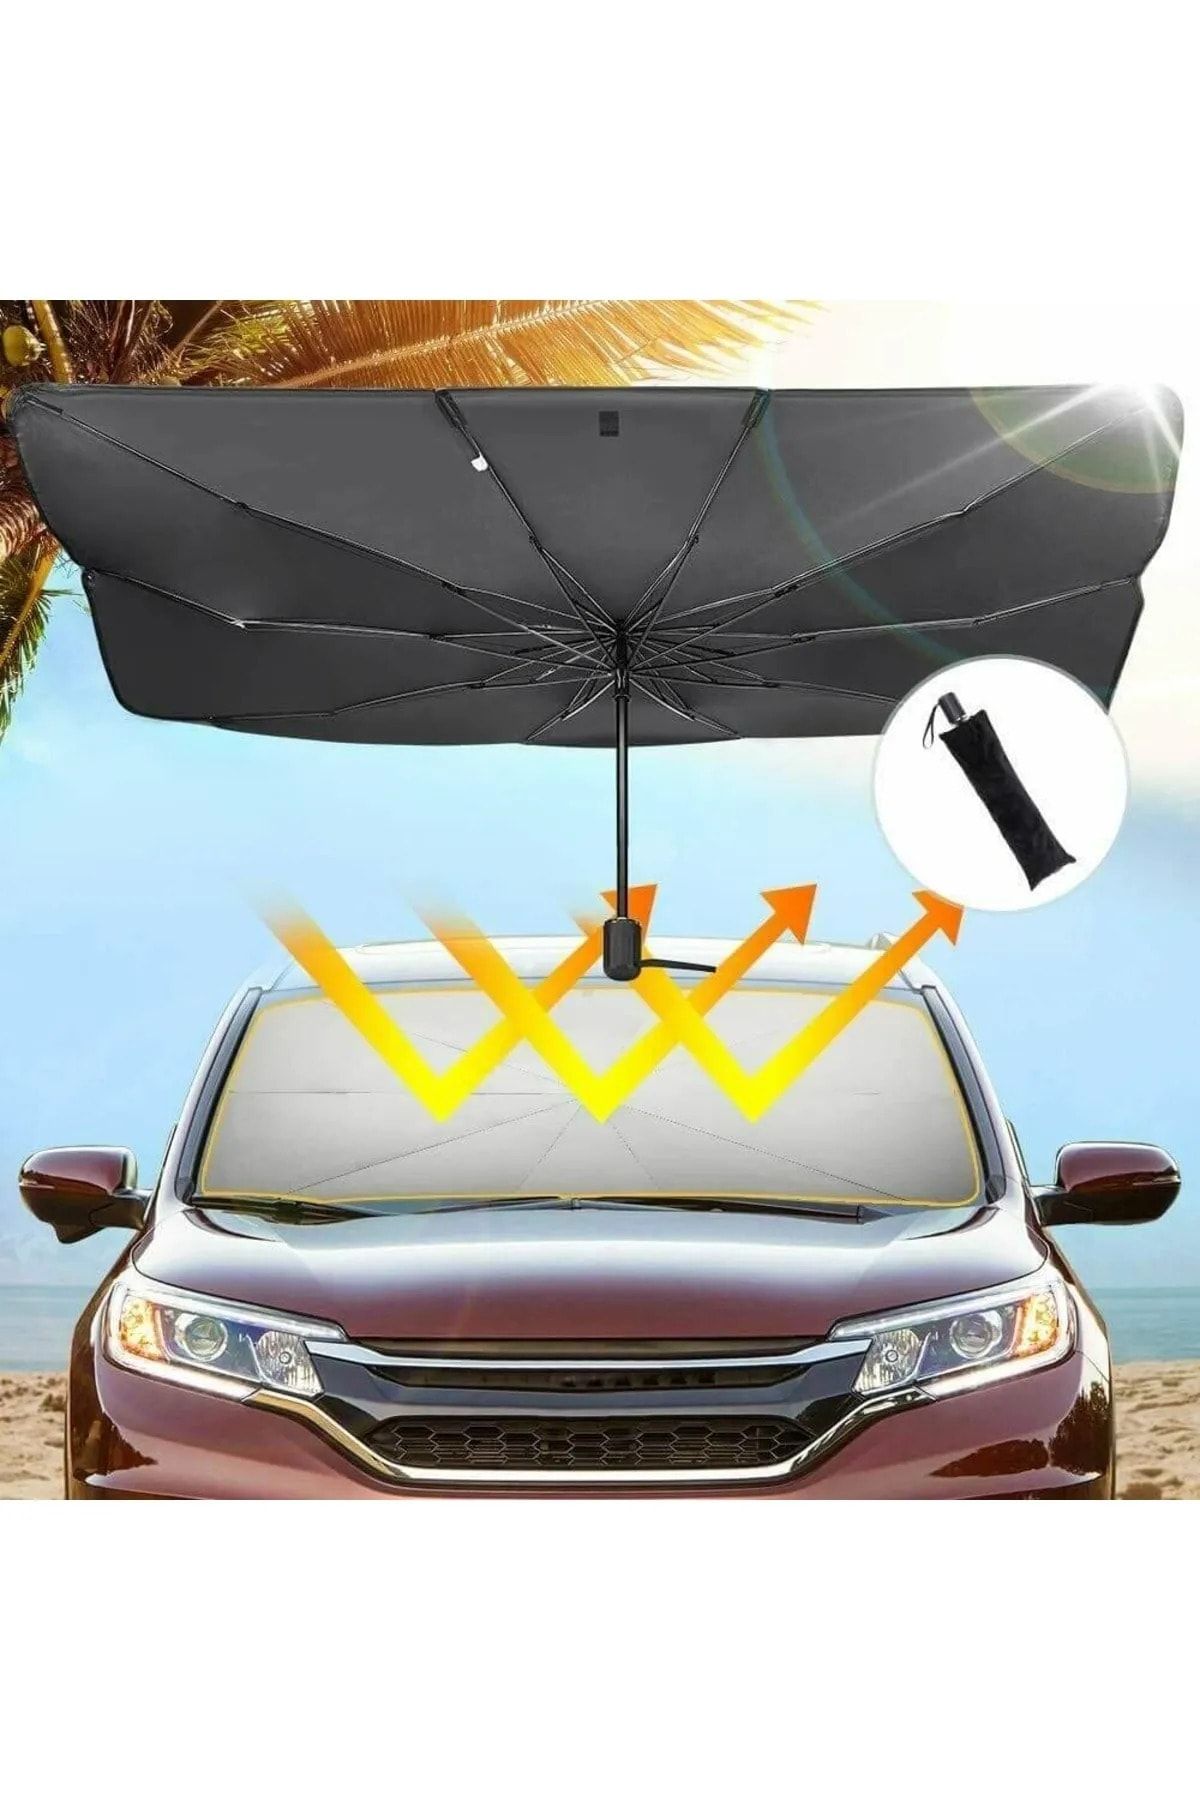 Universal Bmw E39 Araba Ön Cam Güneşlik Katlanabilir Güneşlik Şemsiye Ön Cam Gölgelik